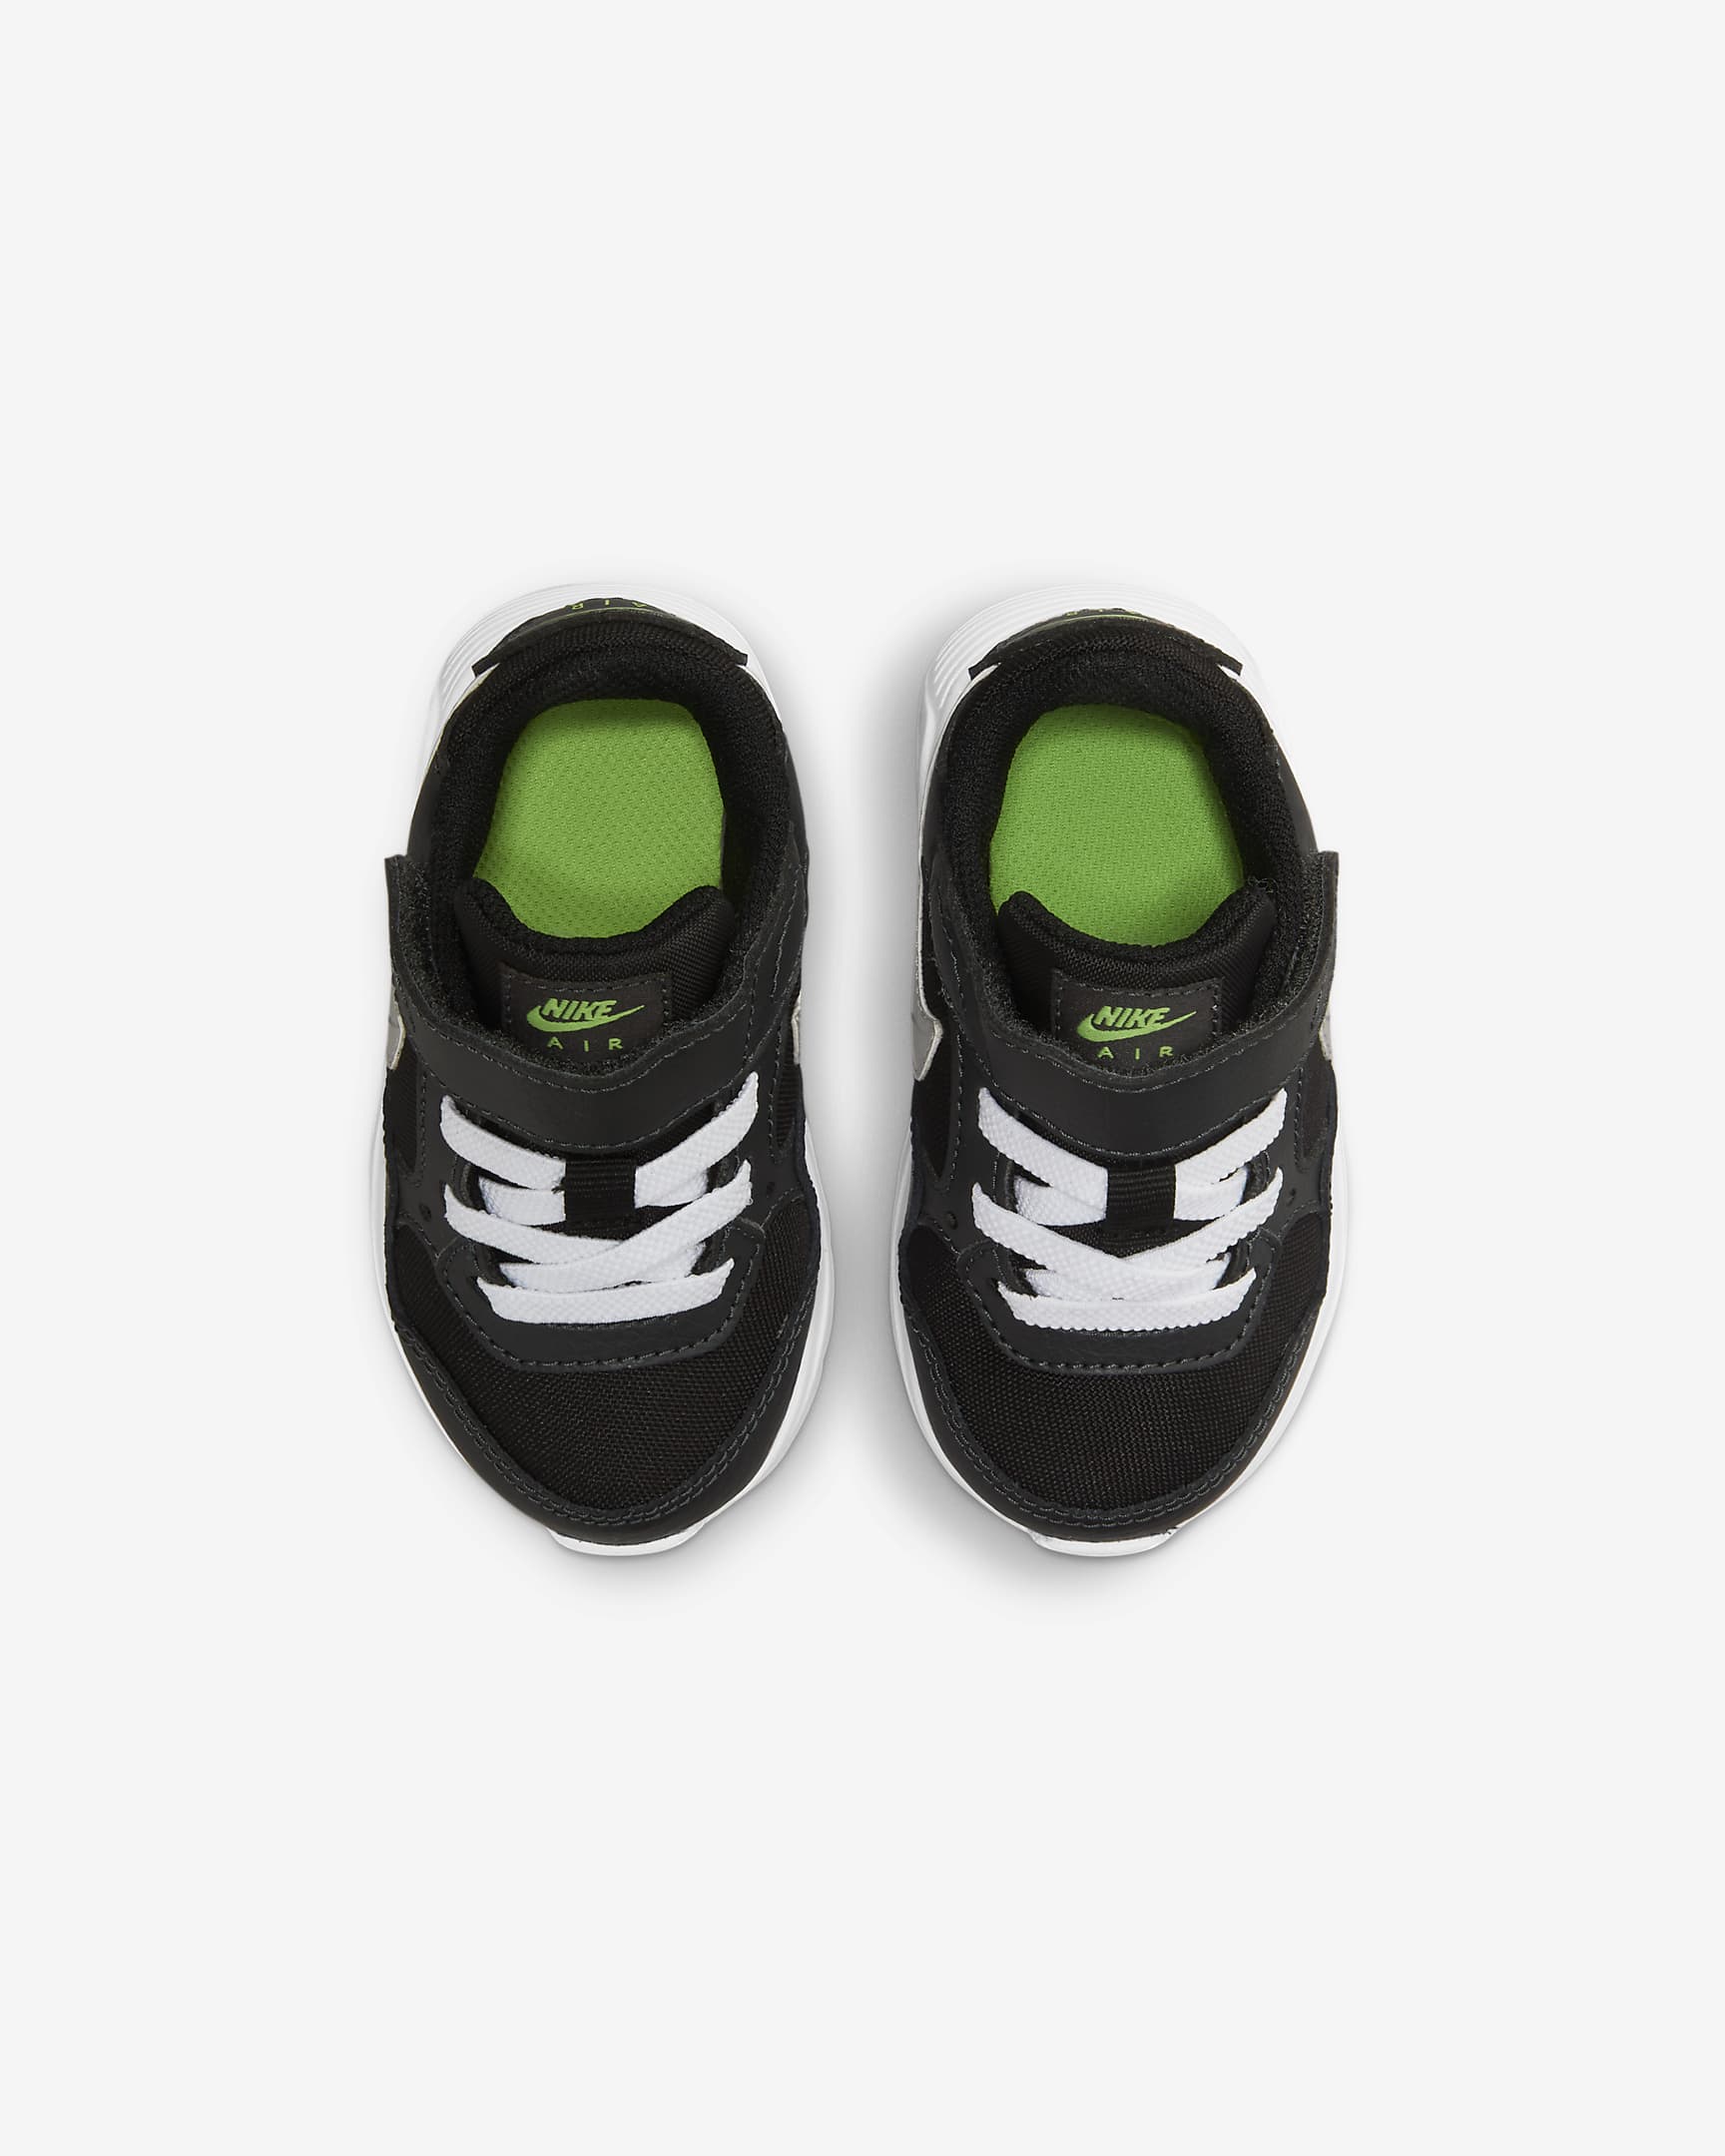 Nike Air Max SC Baby/Toddler Shoes. Nike AT